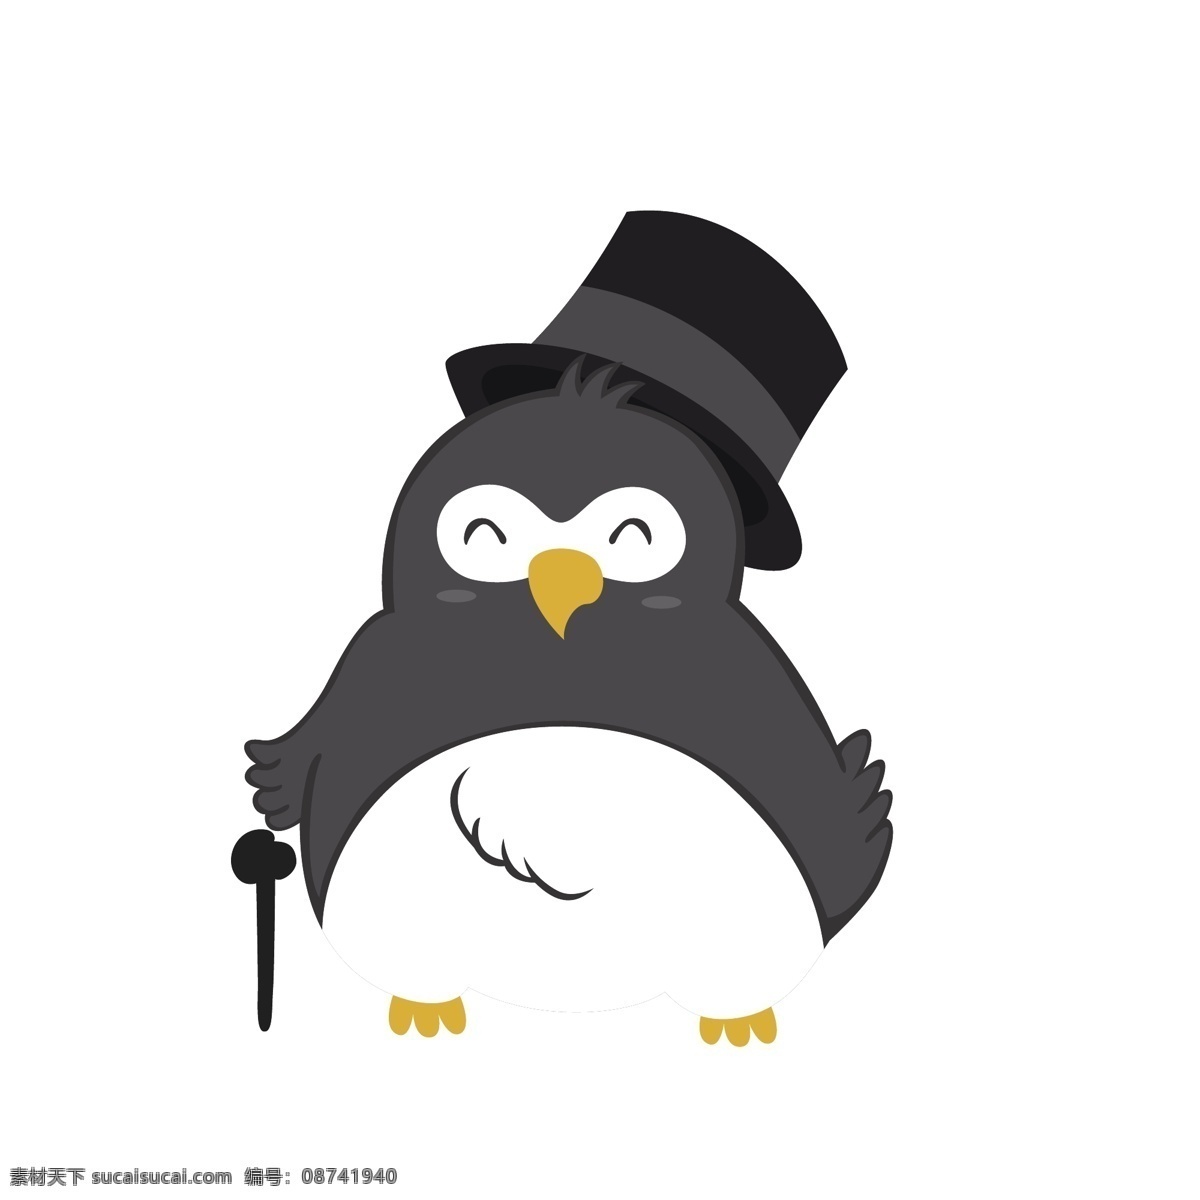 戴帽子 企鹅 矢量 帽子 帽子企鹅 魔术帽 卡通 卡通动物 可爱 可爱动物 可爱企鹅 卡通企鹅